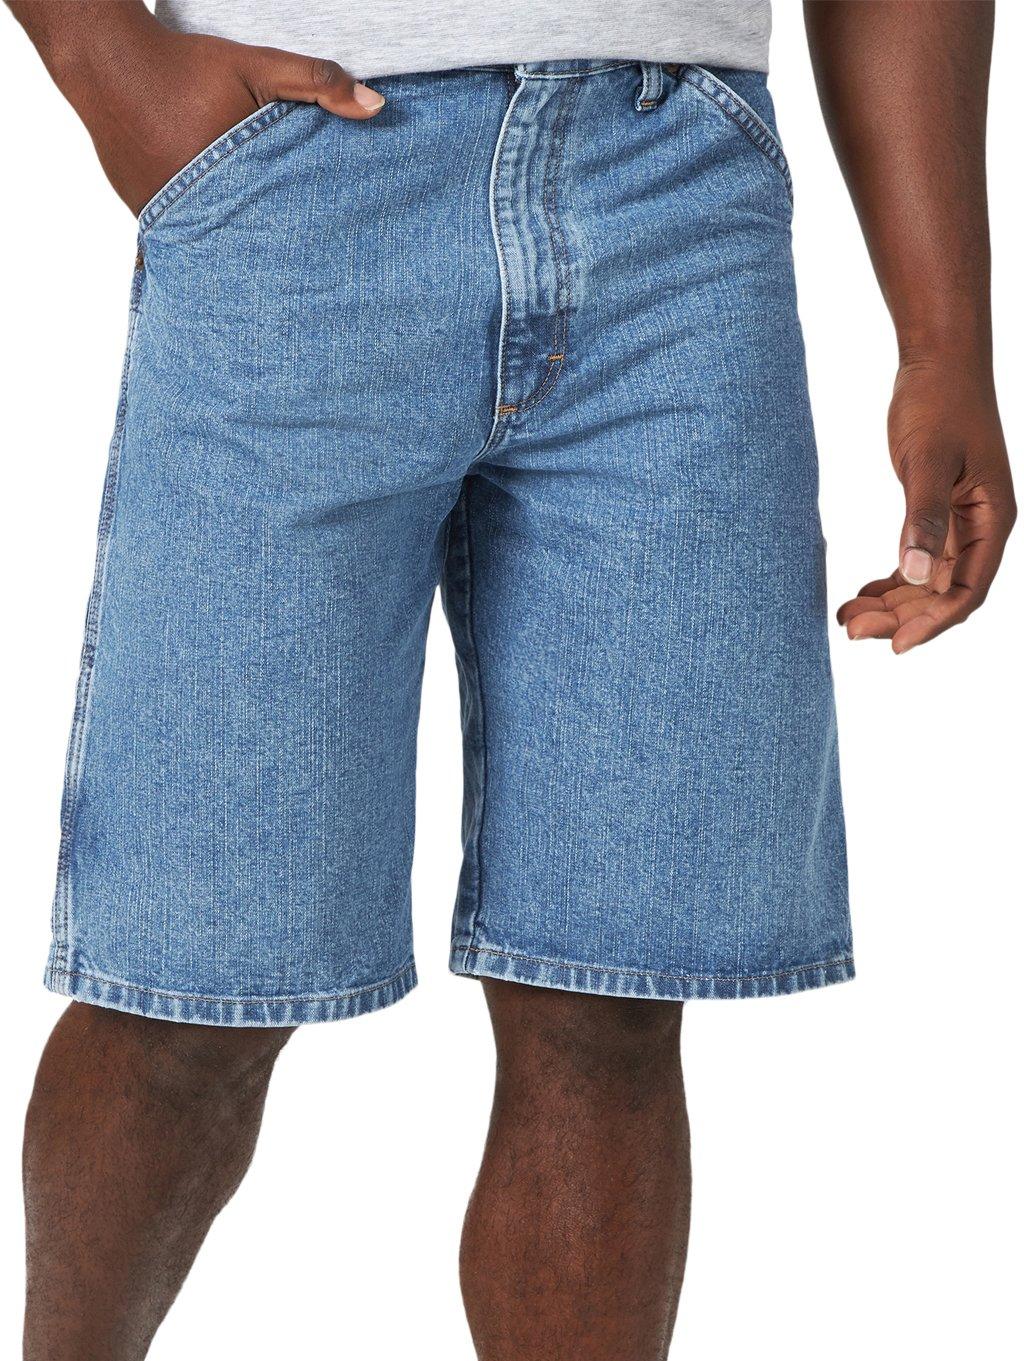 wrangler carpenter jeans shorts